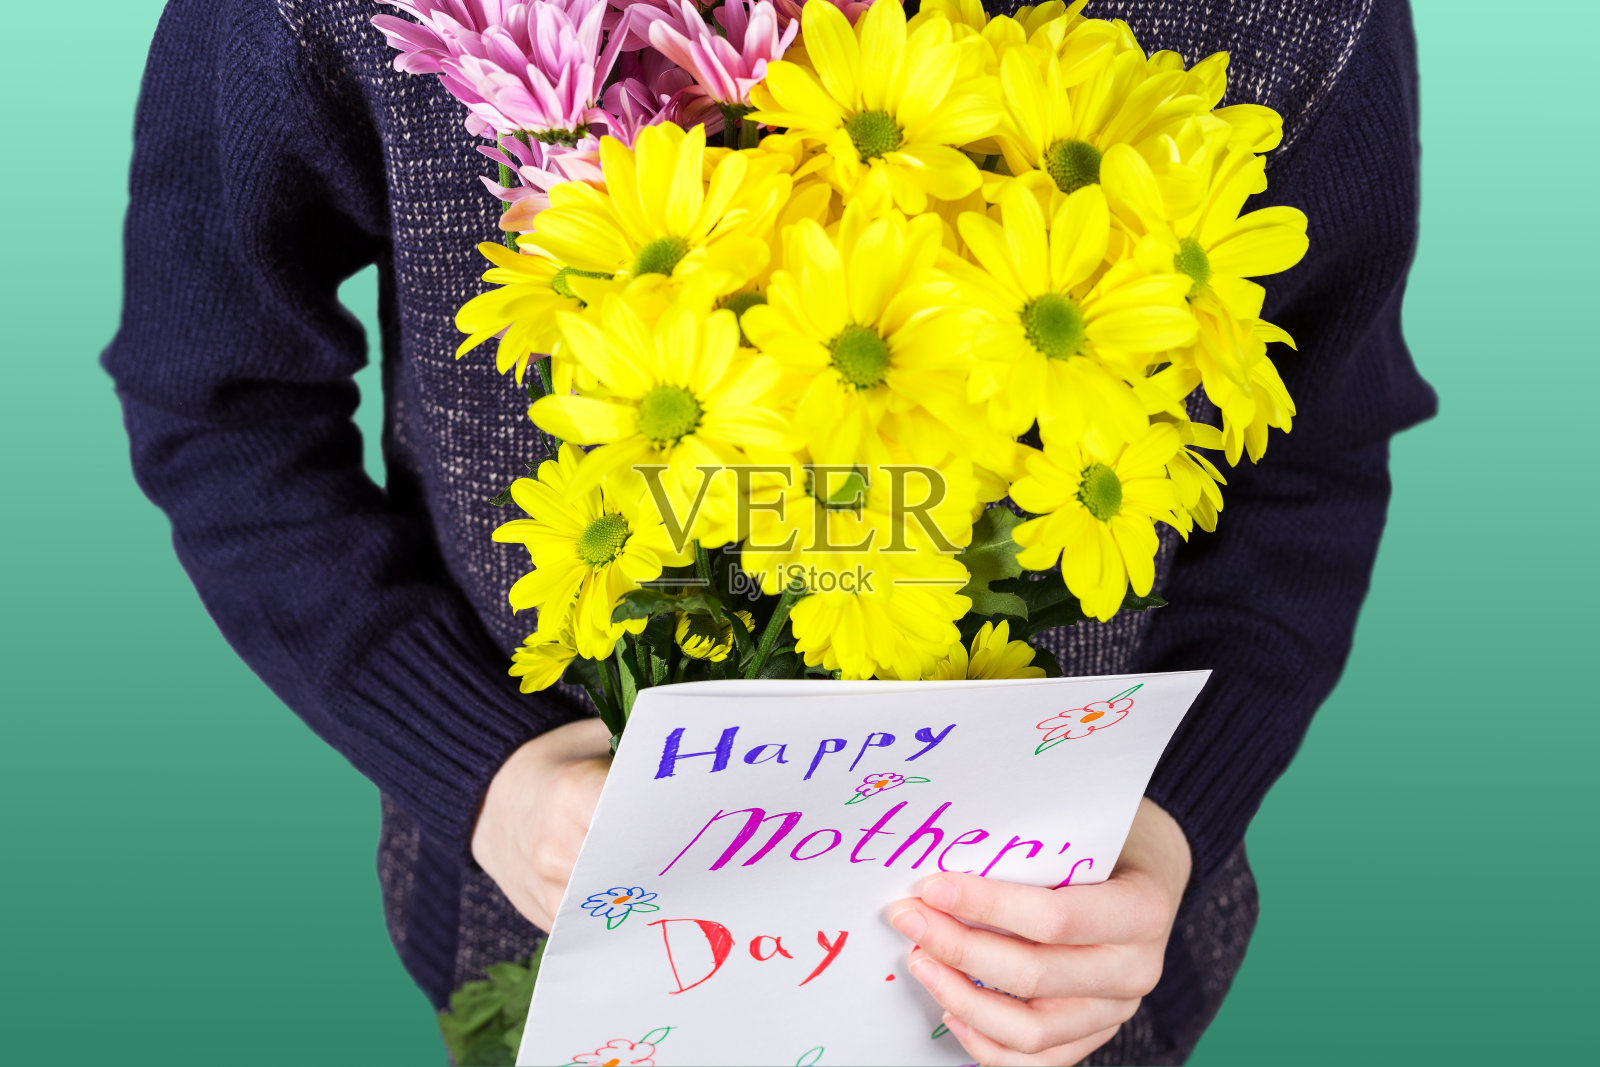 男孩手里捧着一束黄色和粉红色的菊花和手工制作的贺卡“母亲节快乐”。给妈妈买花和礼物照片摄影图片